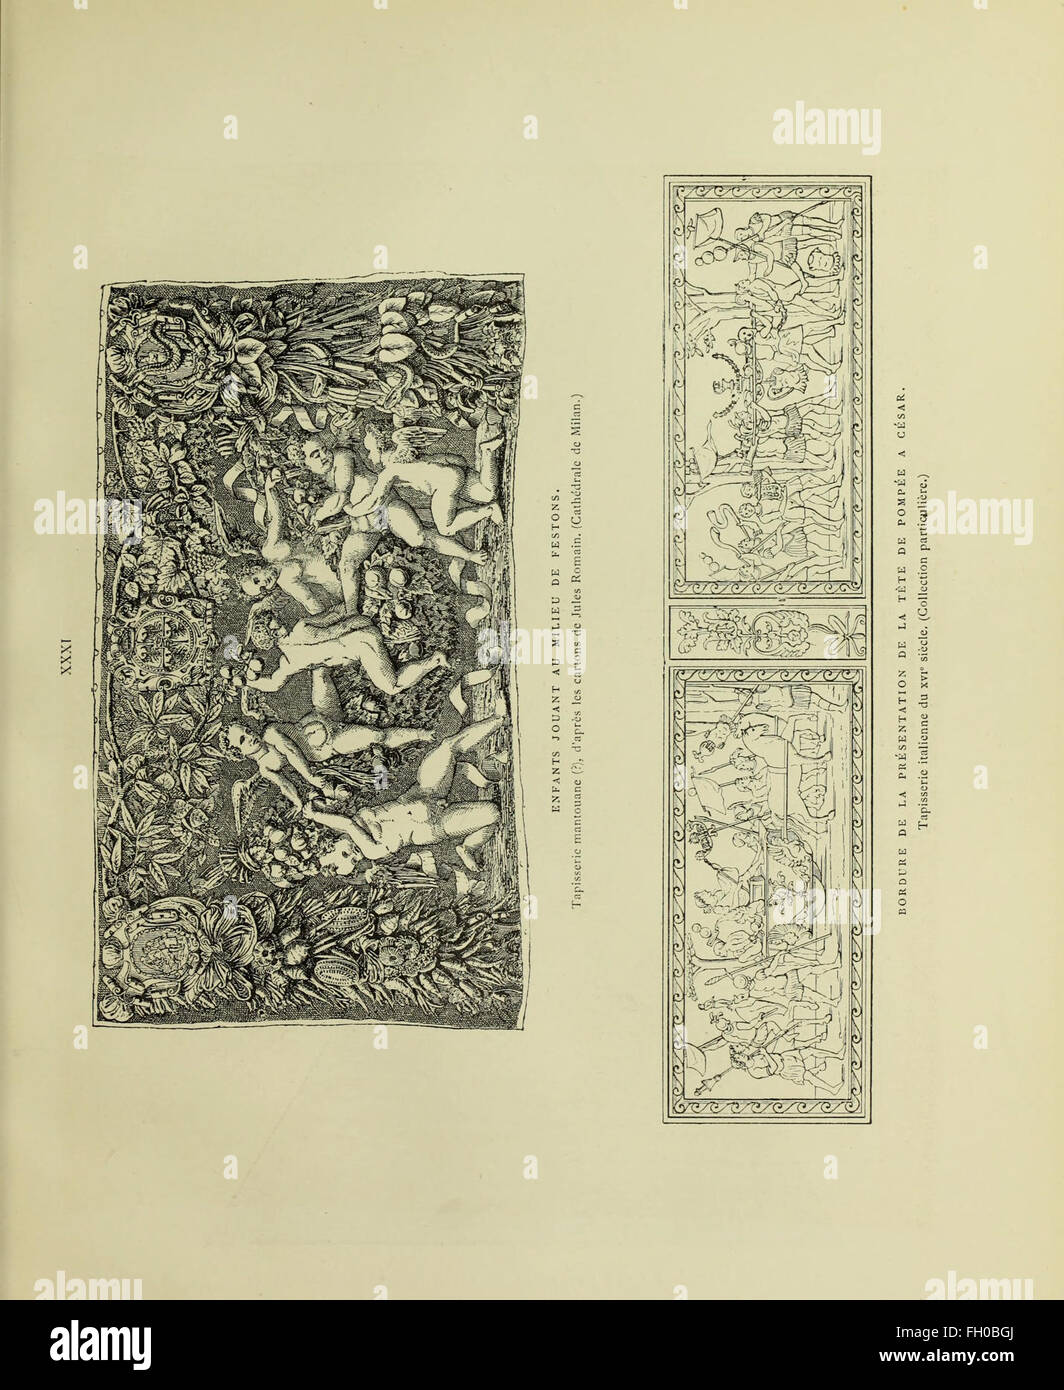 Tapisseries, broderies et dentelles; recueil de modeles anciens et modernes (1890) Stock Photo